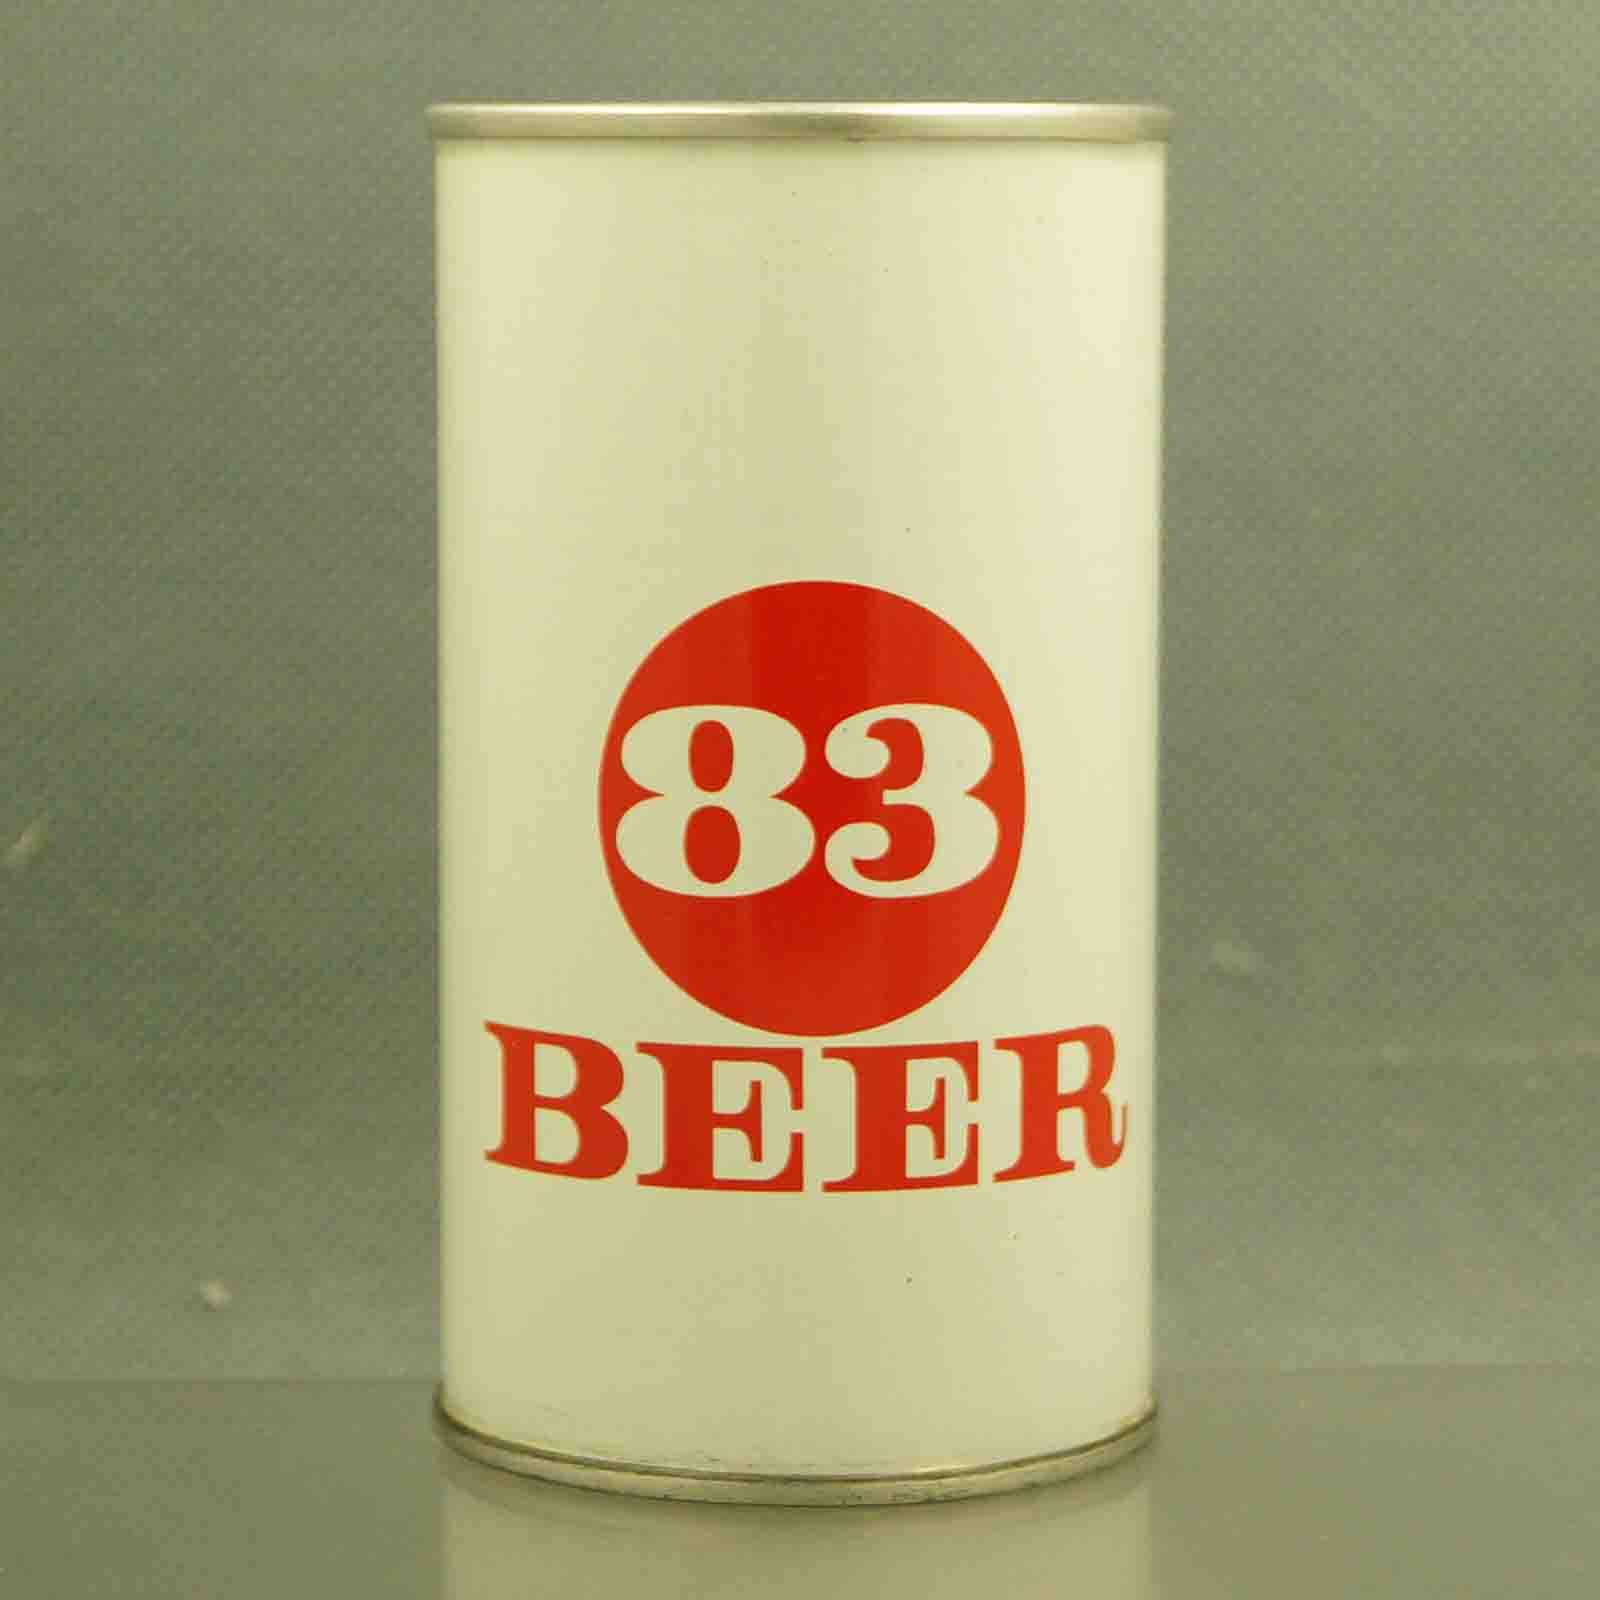 83 beer 61-21 pull tab beer can 1